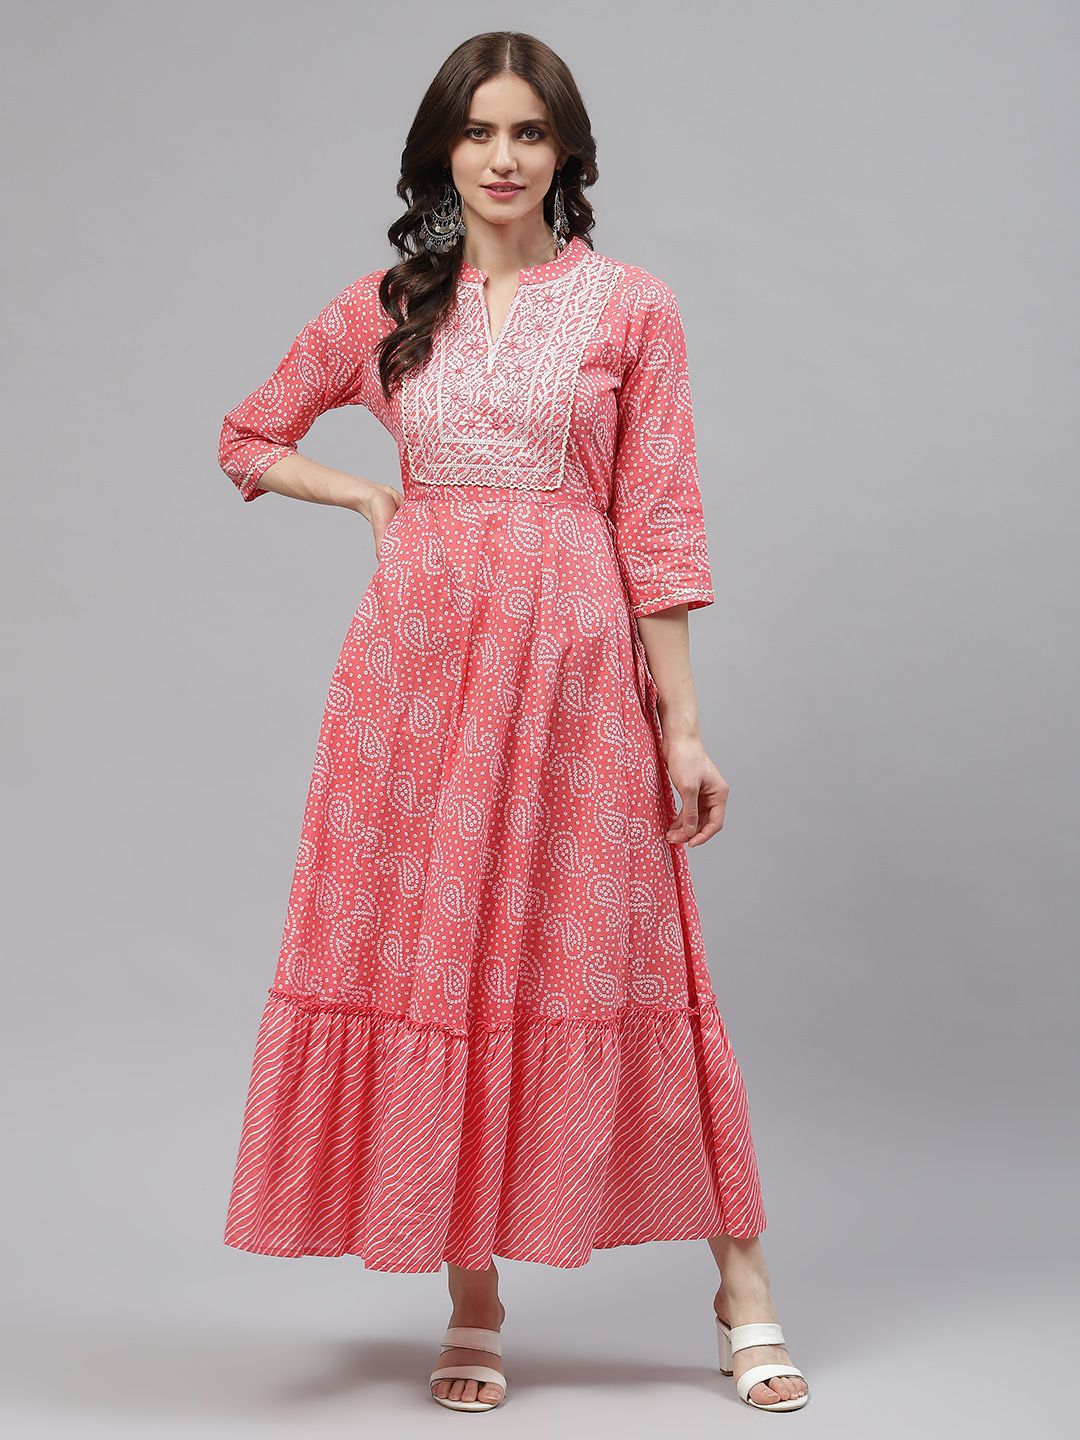 Readiprint Fashions Orange & White Tie and Dye Ethnic Maxi Dress Price in India